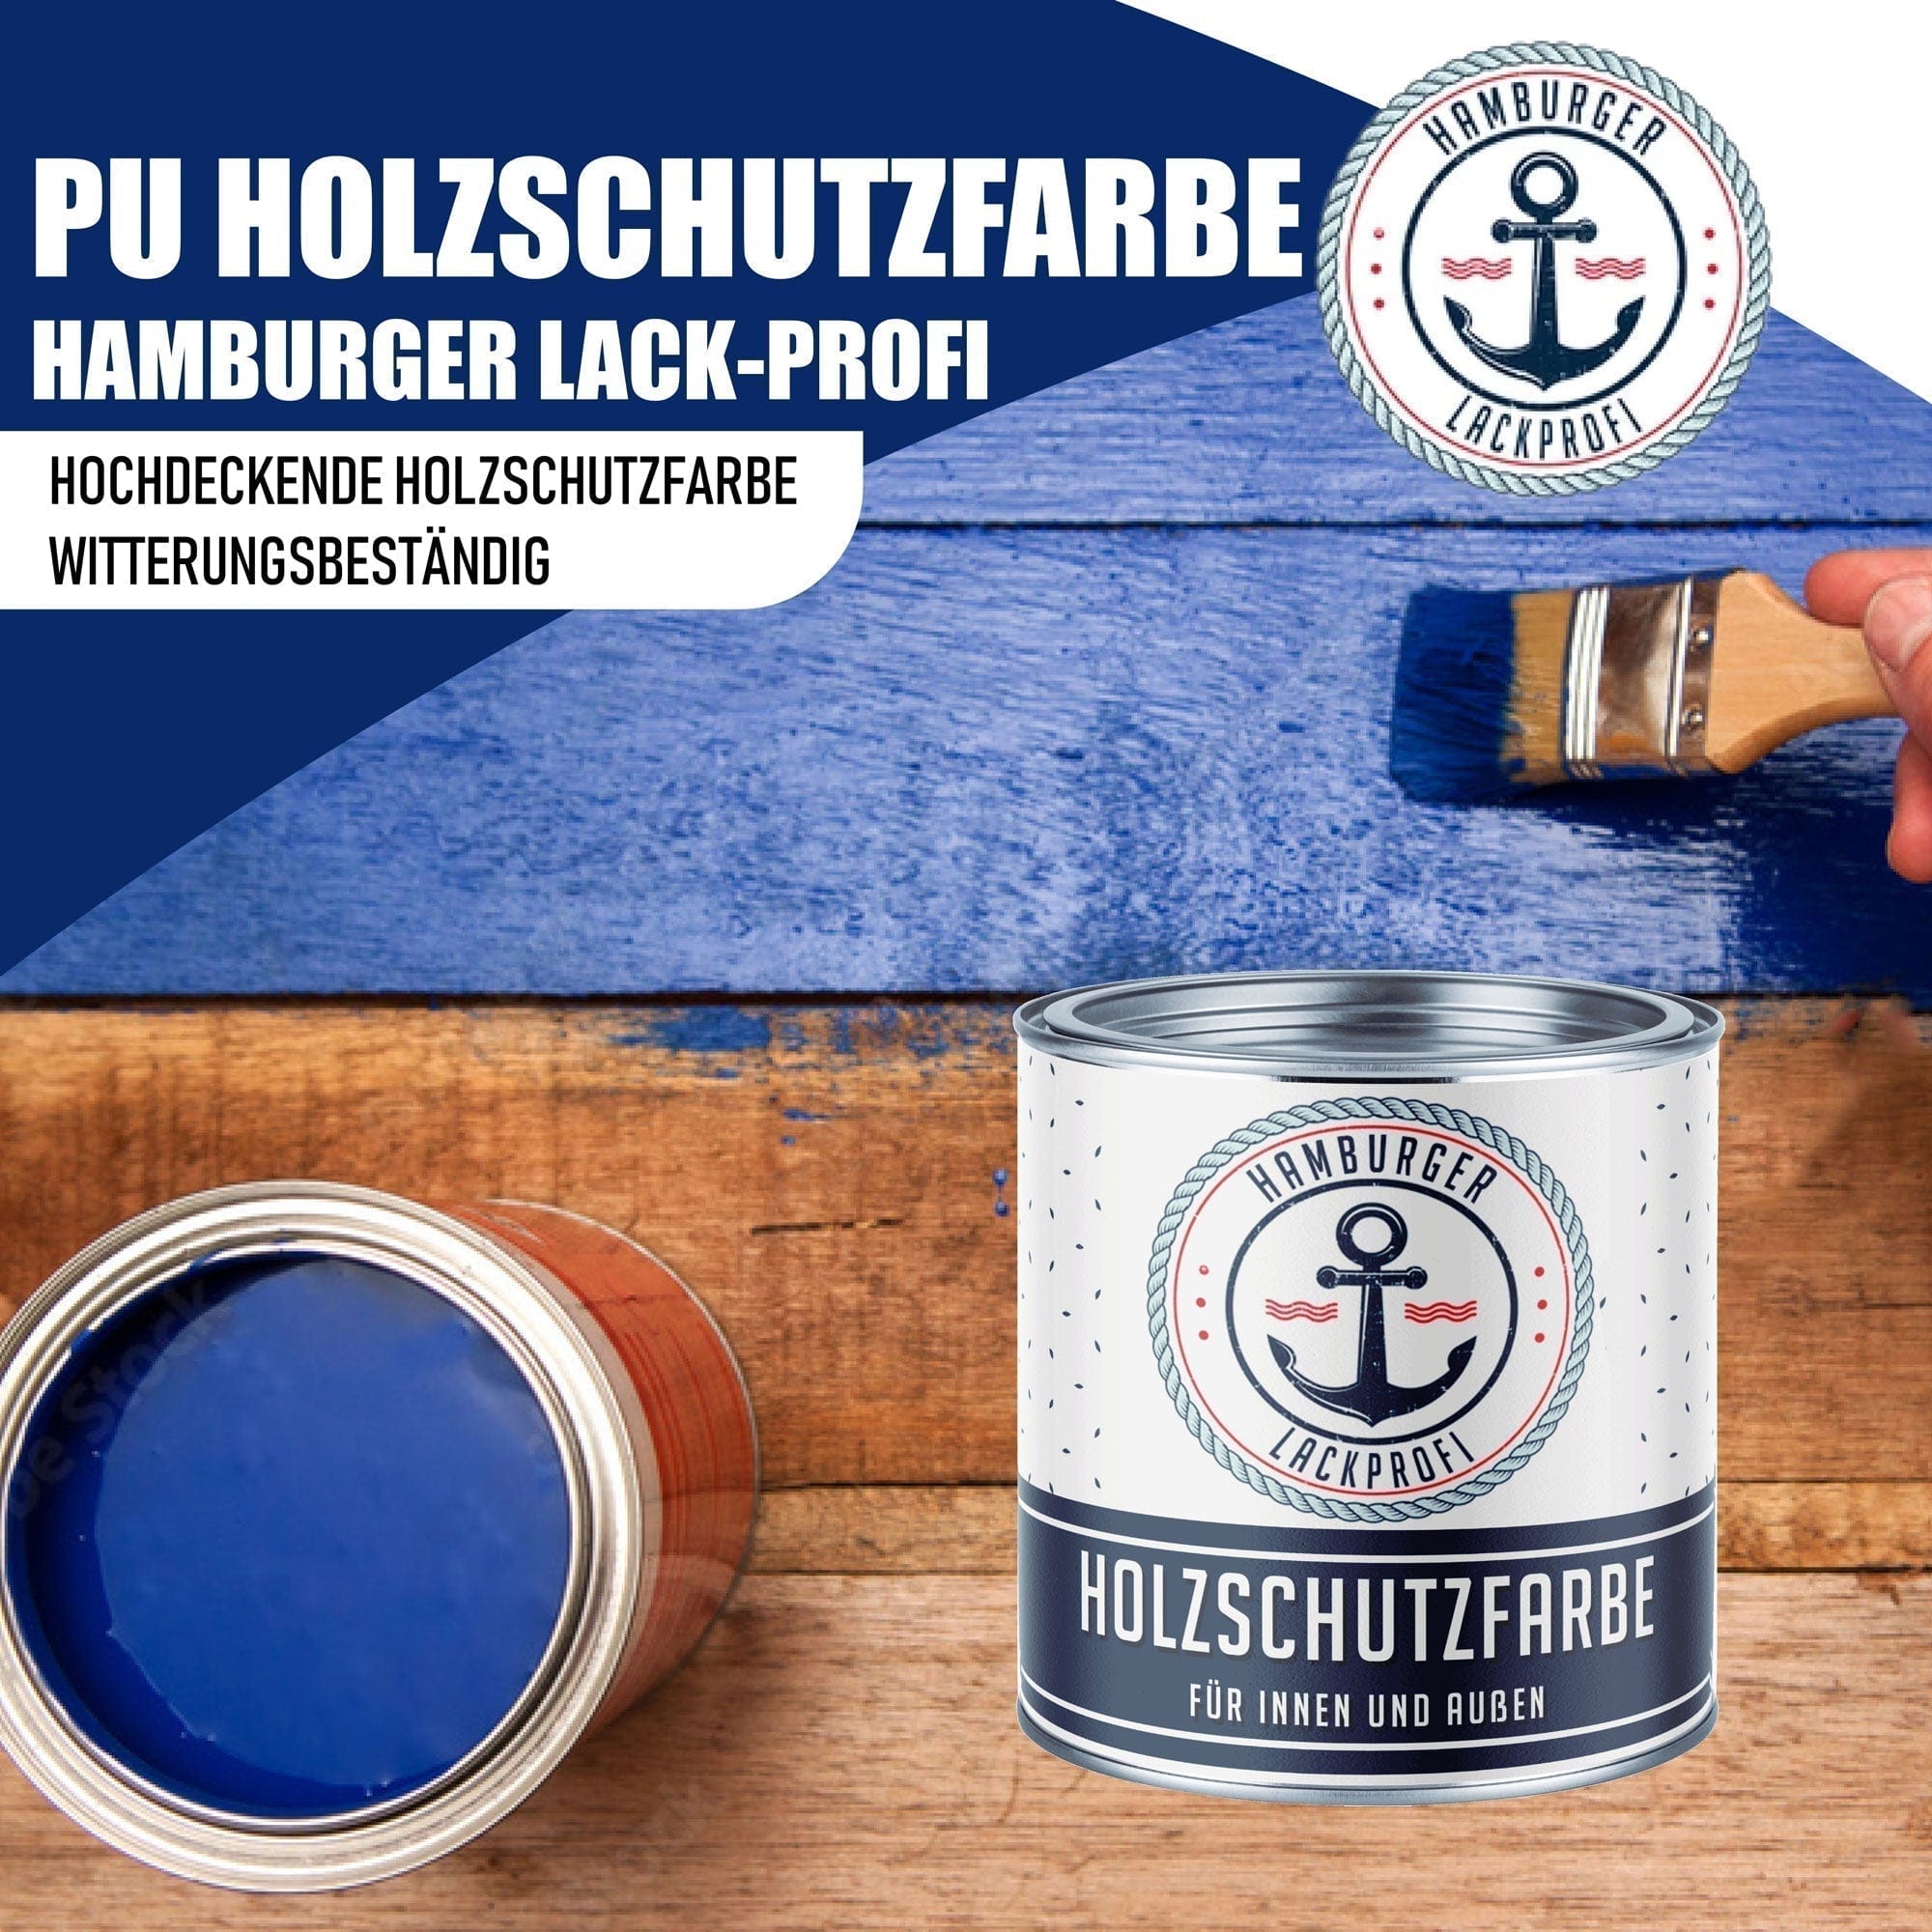 Hamburger Lack-Profi Lacke & Beschichtungen PU Holzschutzfarbe RAL 6026 Opalgrün - Wetterschutzfarbe